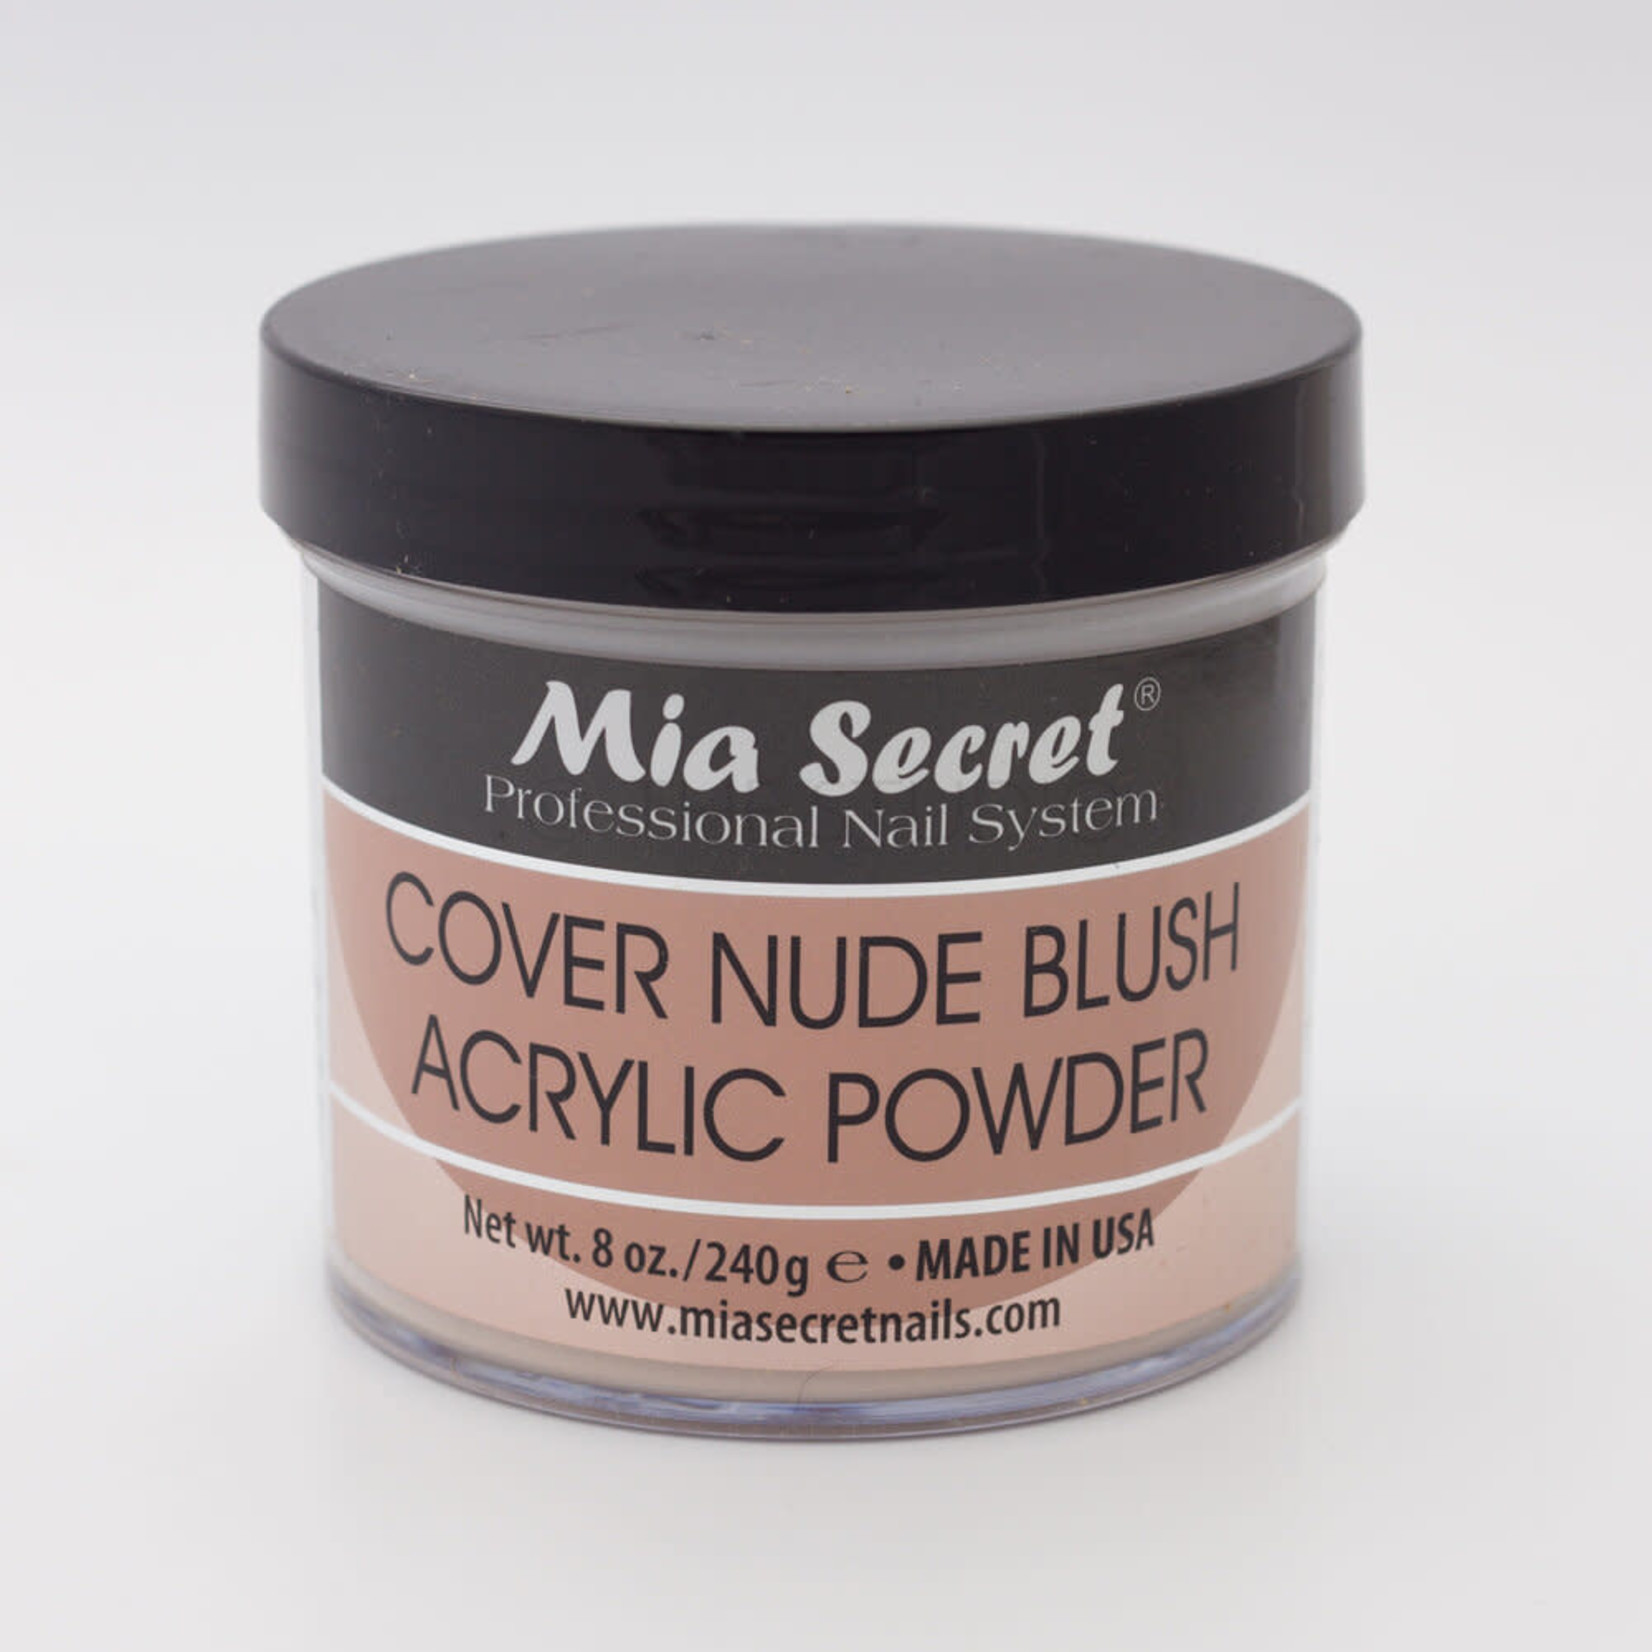 Mia Secret Mia Secret - Acrylic Powder - Cover Nude Blush -